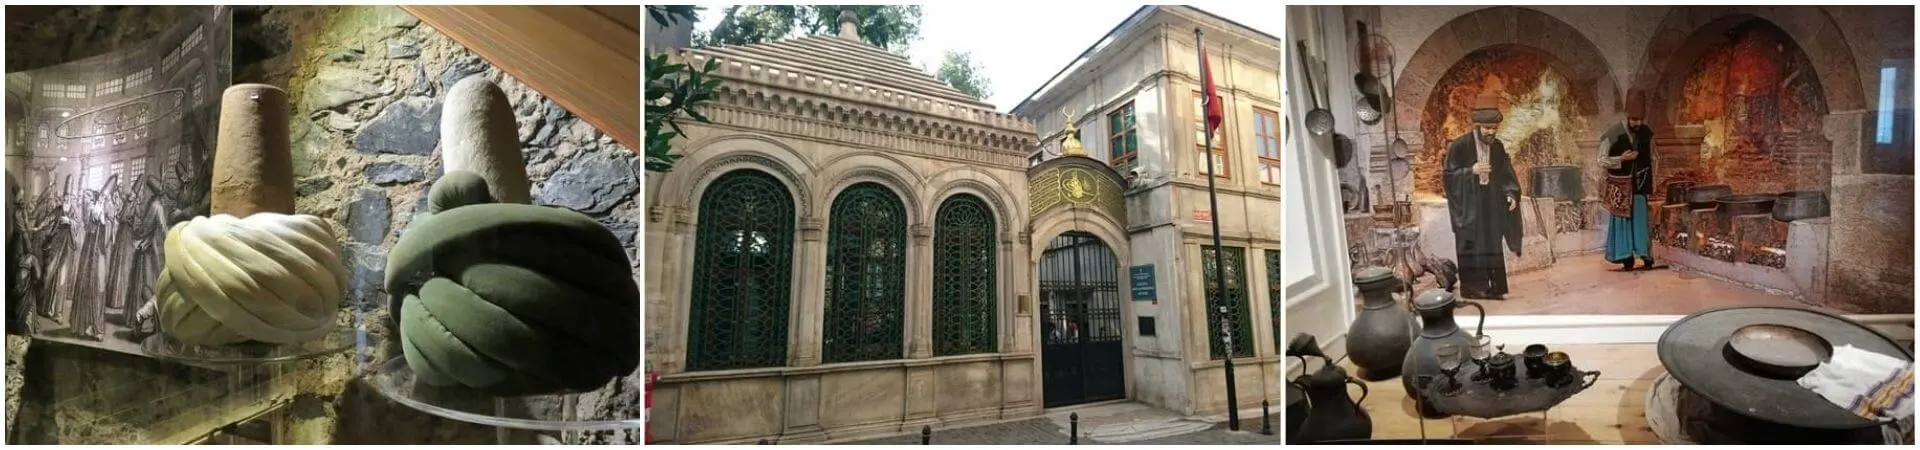 Entrée du musée Galata Mevlevi Lodge